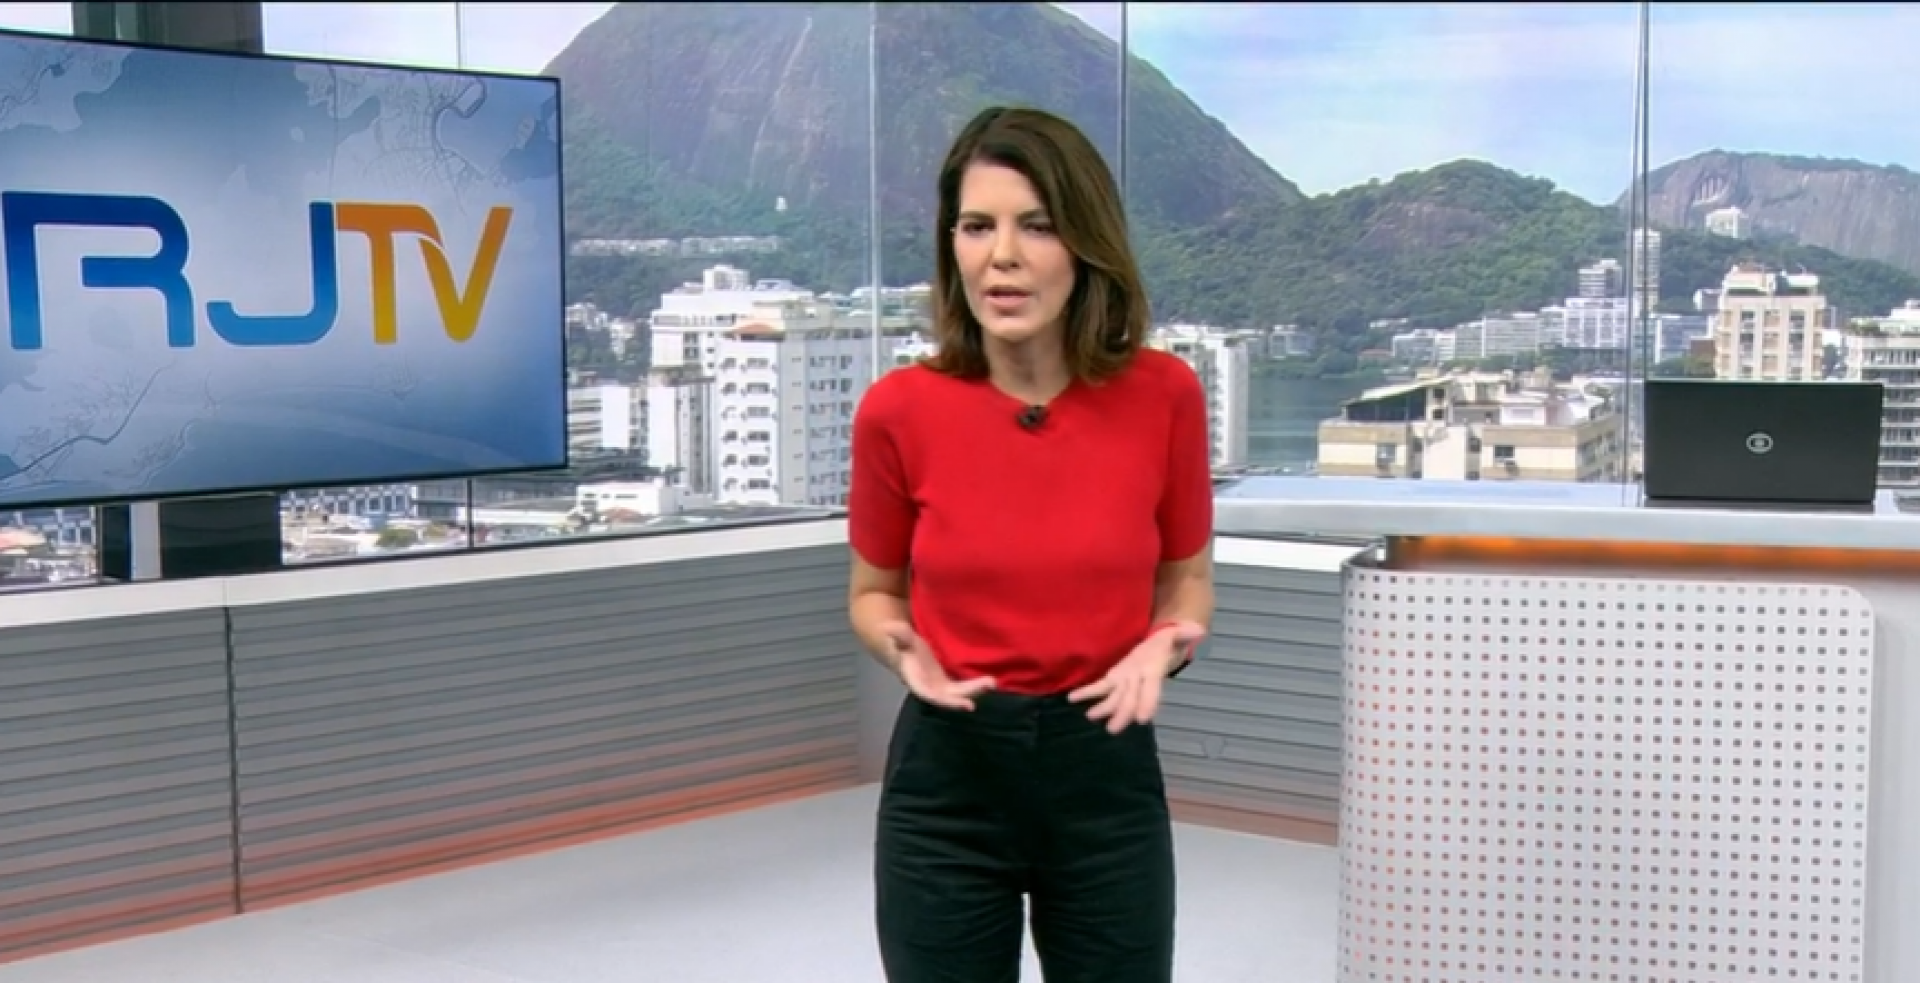 Mariana Gross usa vermelho e preto no RJ1 em homenagem ao Flamengo